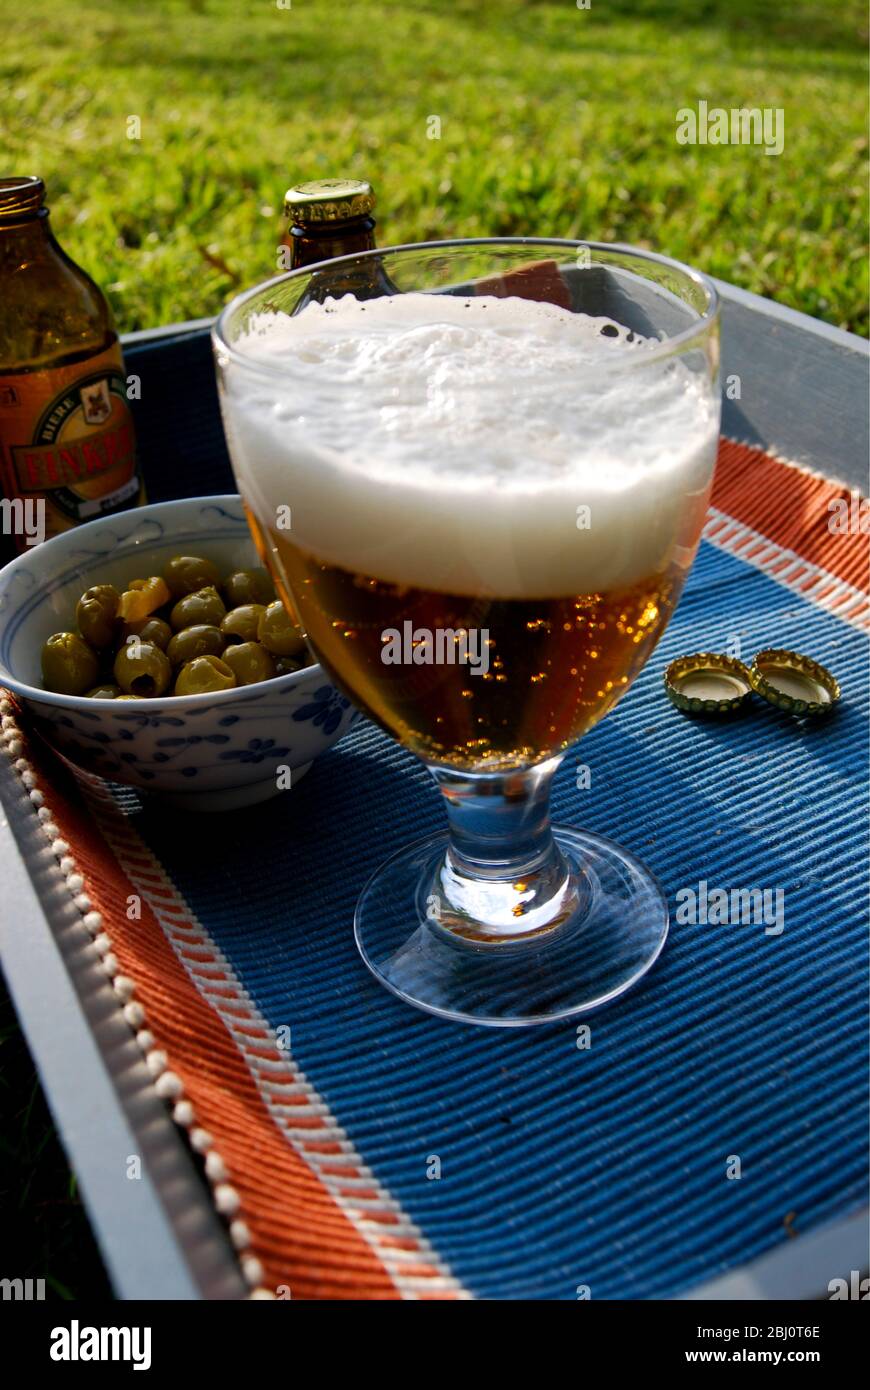 Ein Glas Bier mit einem guten Schaumkessel und einer Schale Oliven, auf einem Tablett auf dem Gras - Stockfoto